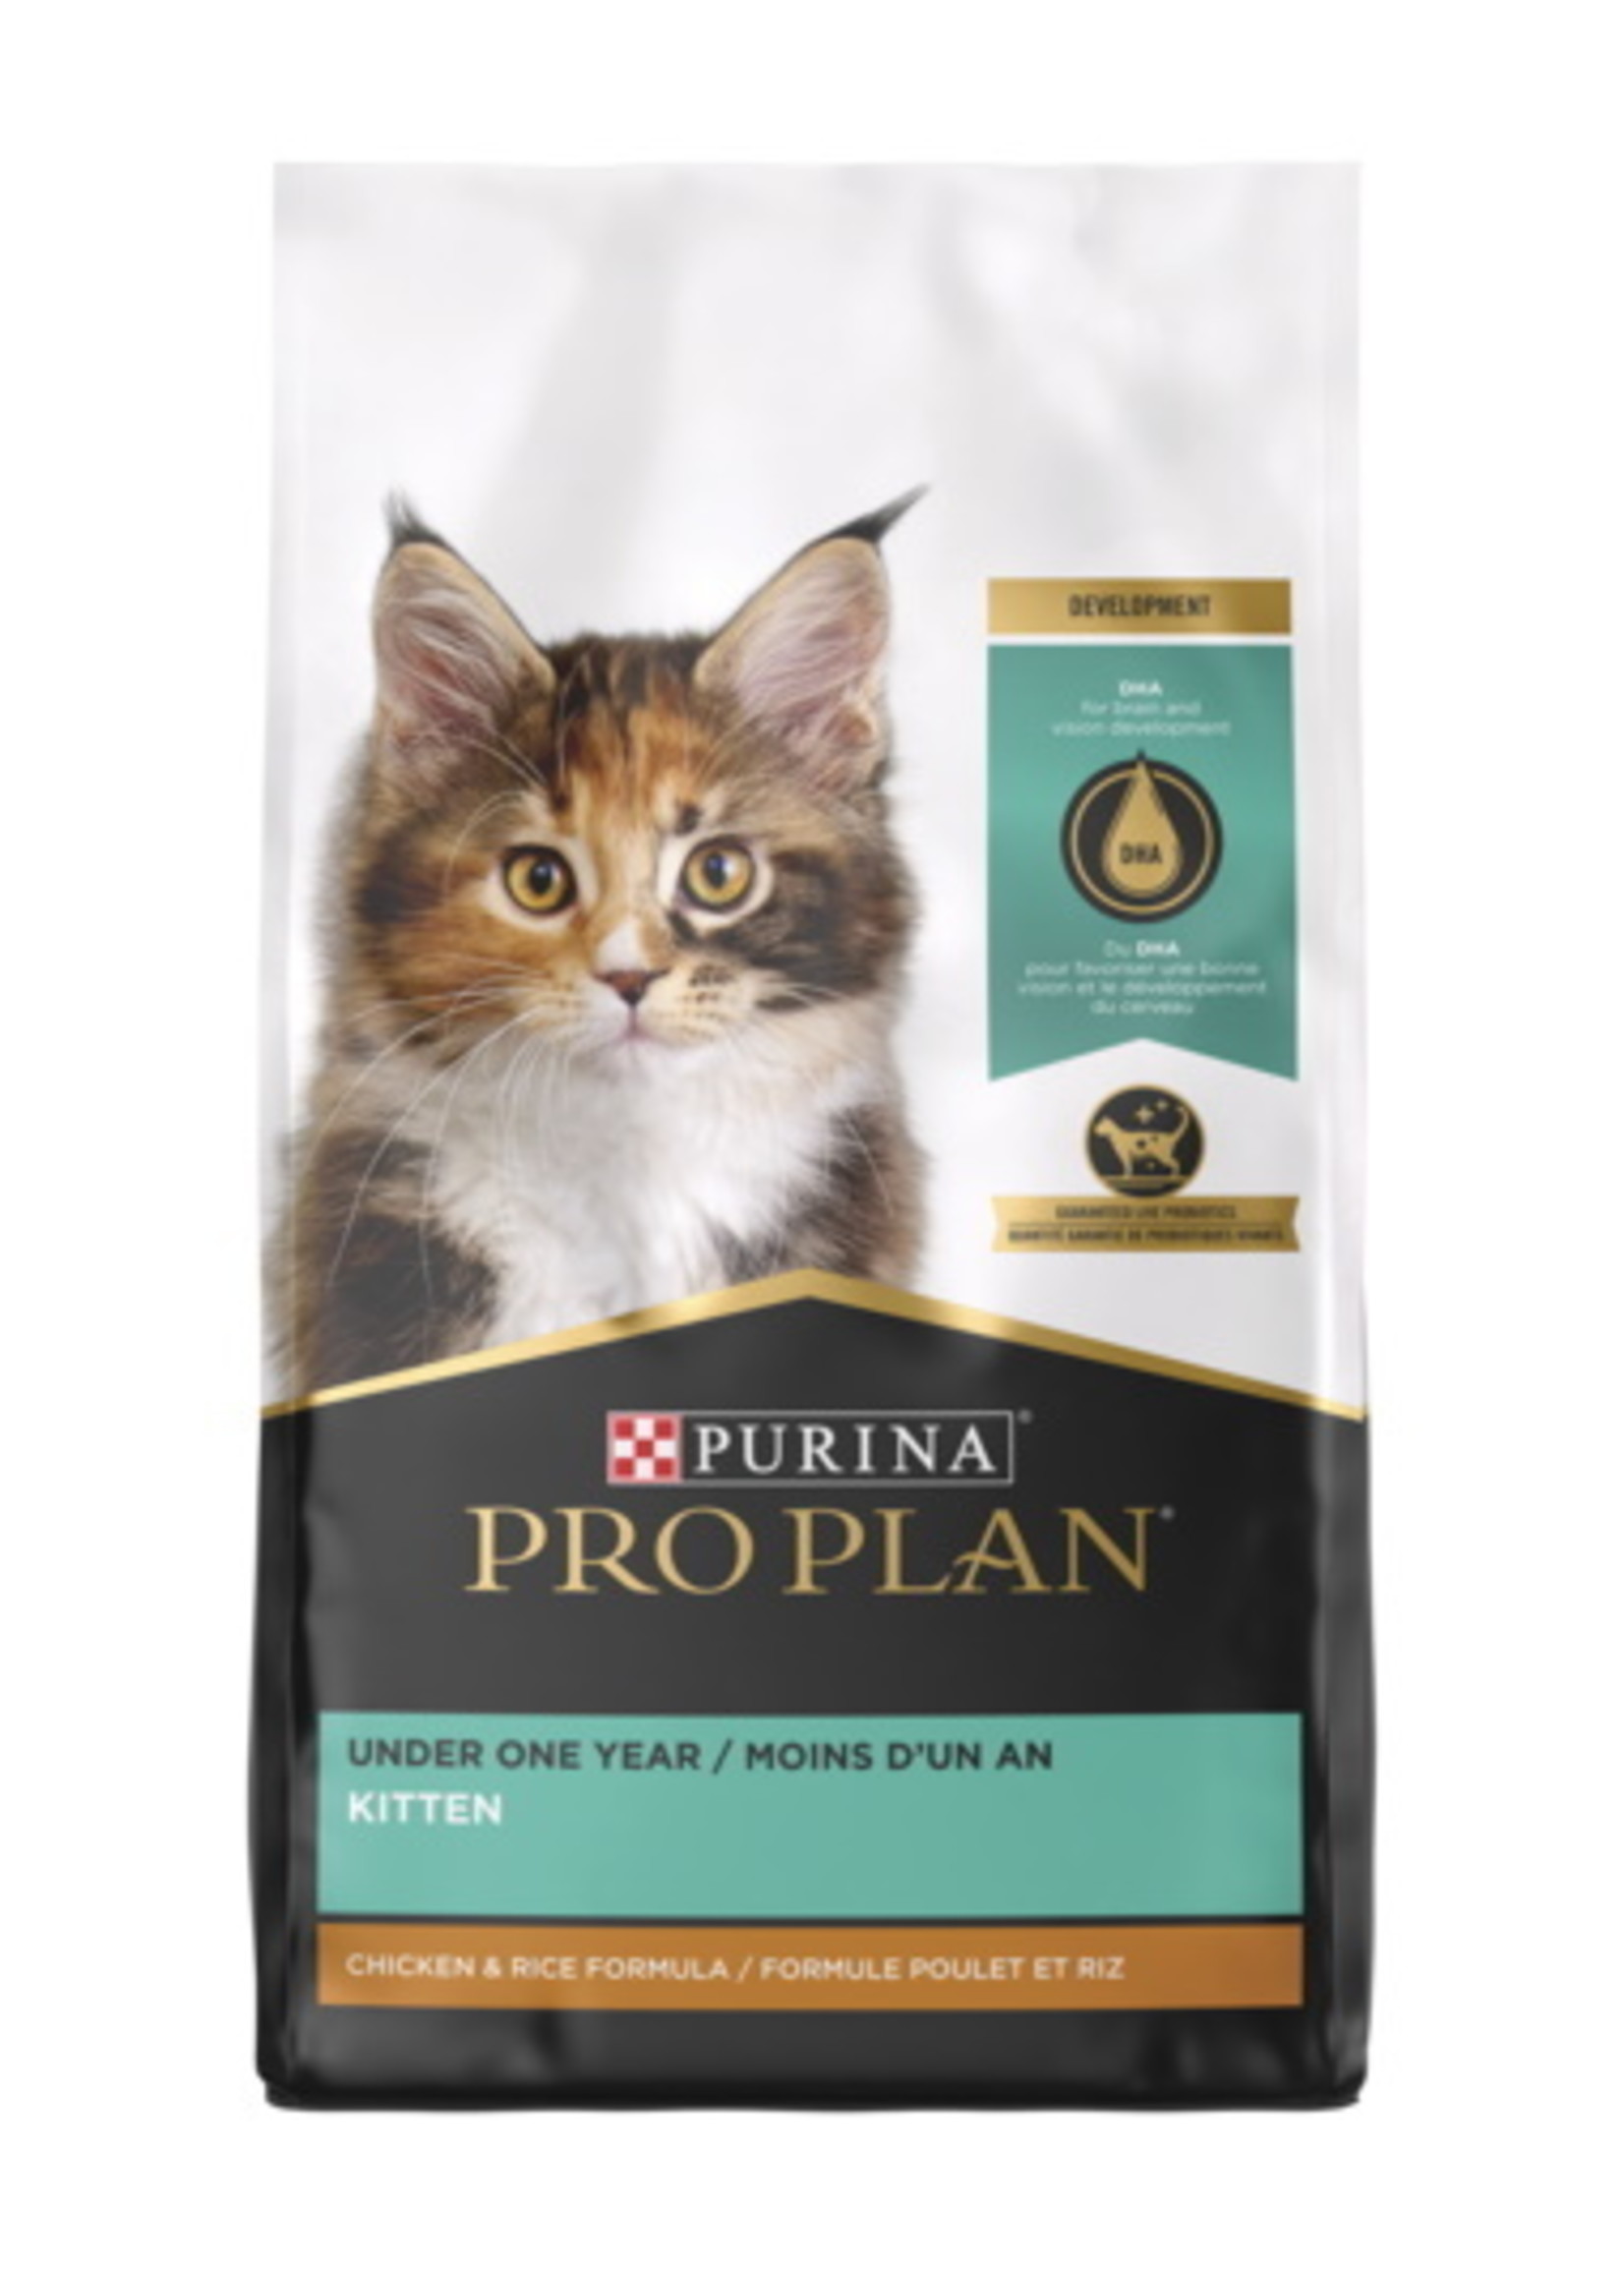 Purina Pro Plan Purina Pro Plan Kitten Chicken & Rice